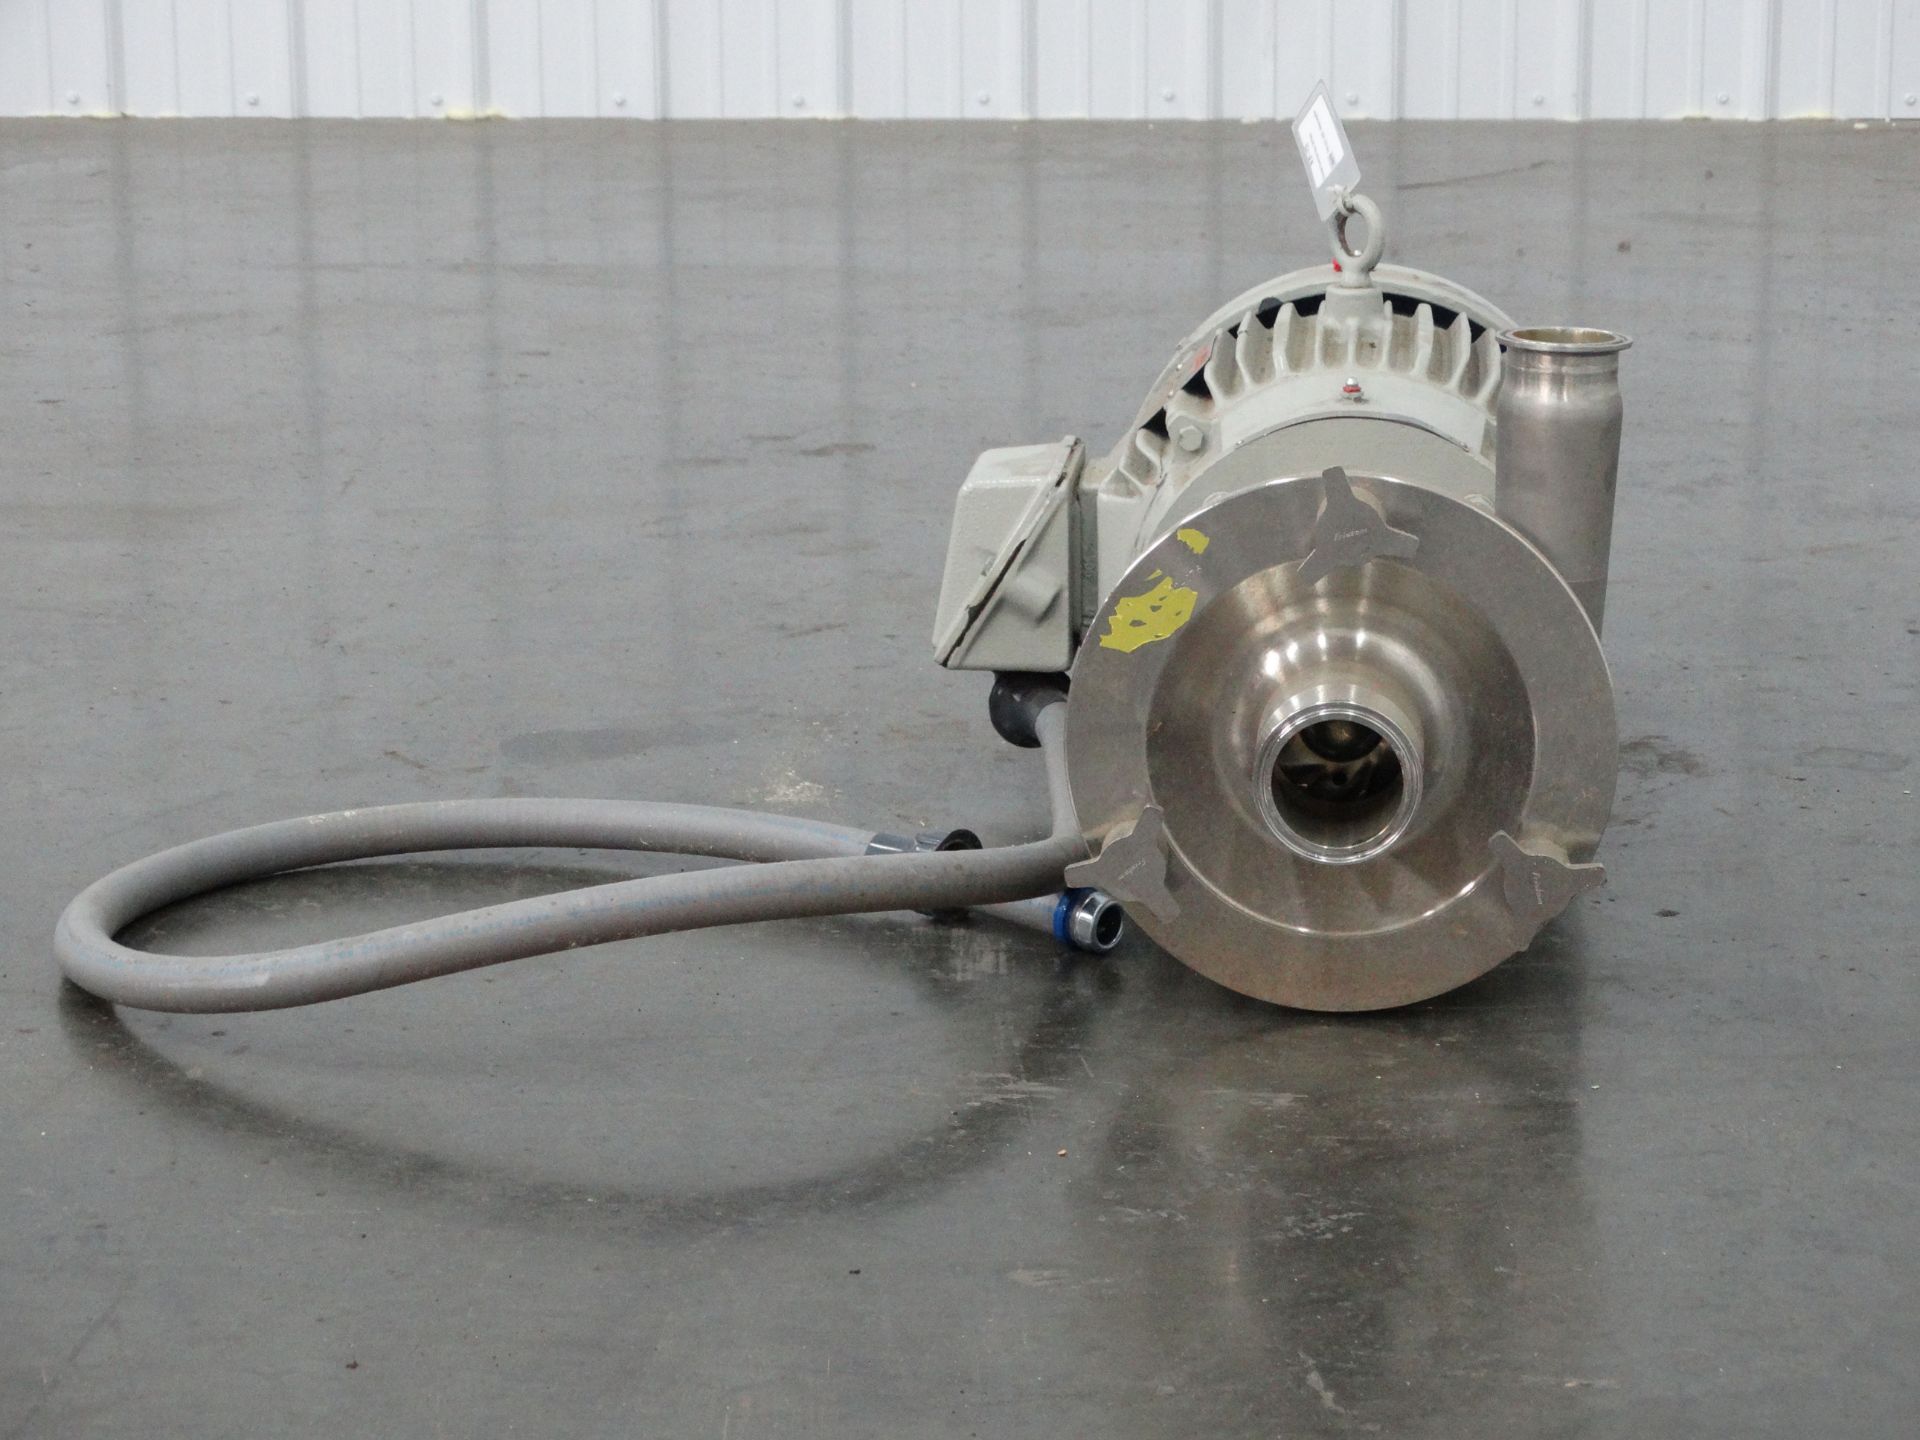 Fristam FPR3532-140 10 Horsepower Centrifugal Pump D2022 - Image 4 of 9